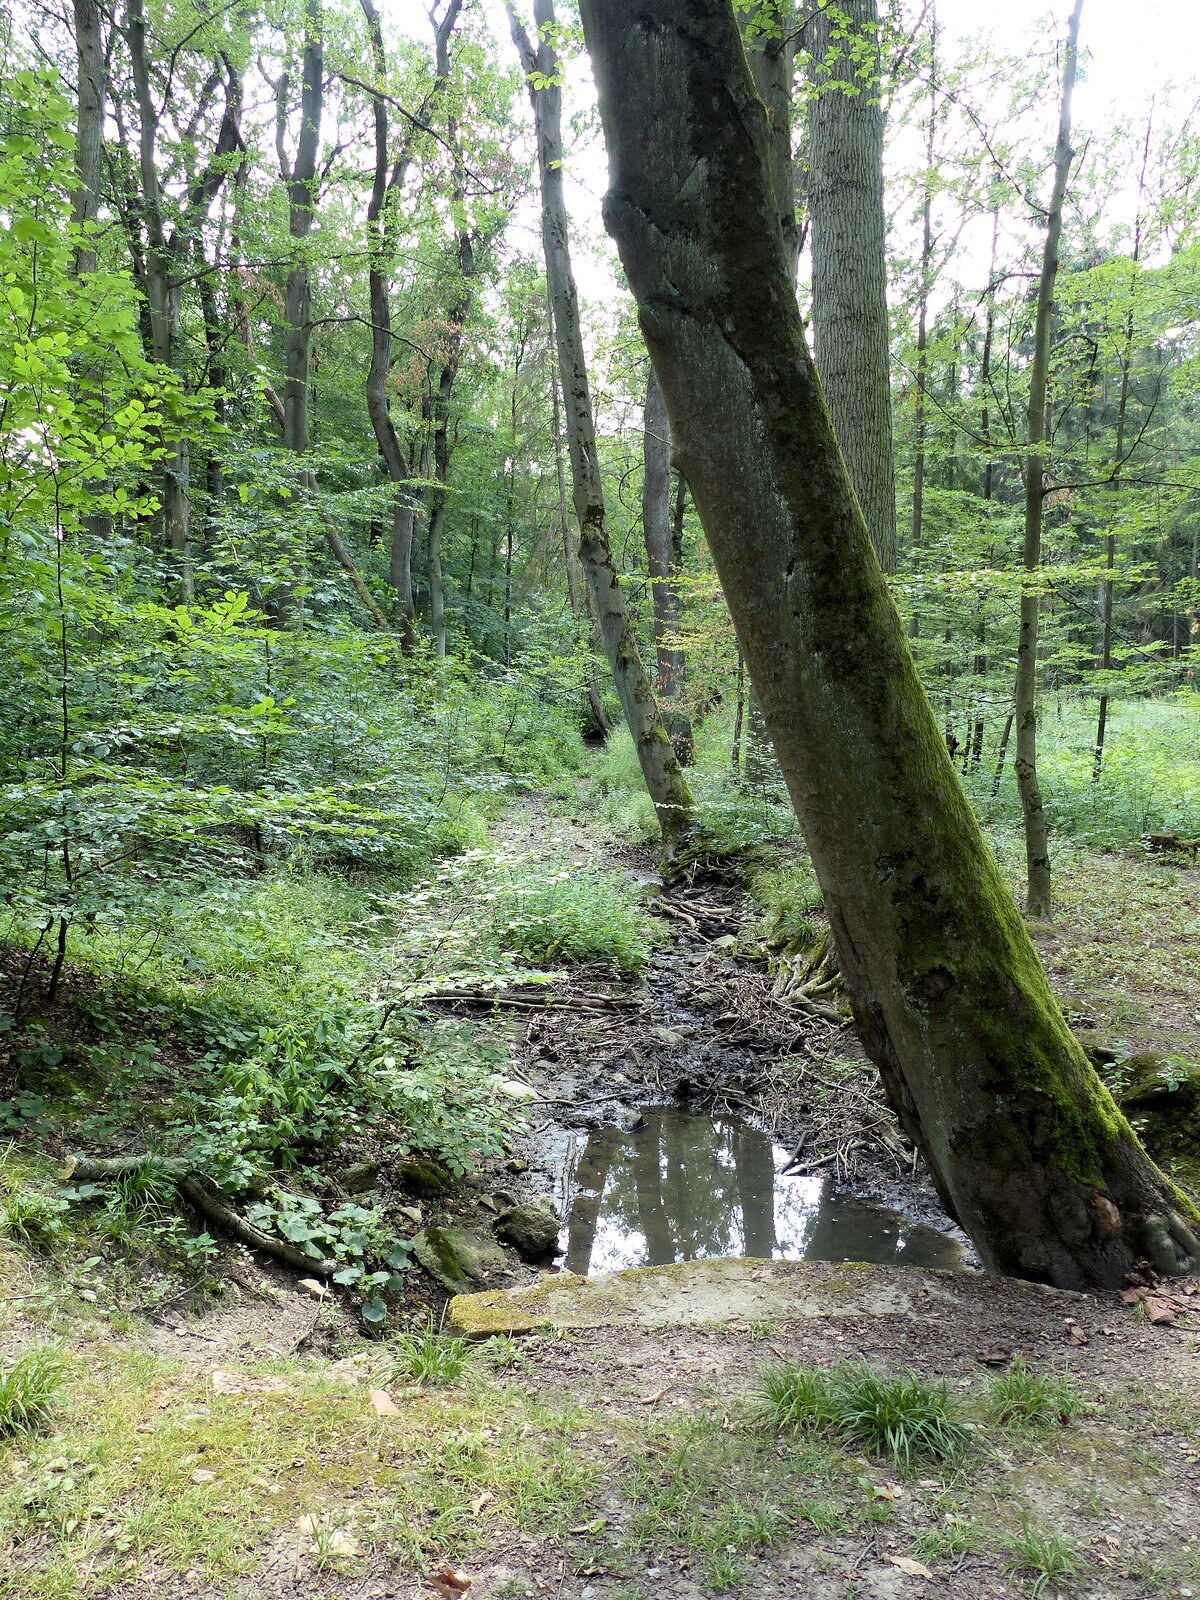 Na fotografii widoczny jest wyschnięty ciek leśny, który znajduje się w lesie pomiędzy licznymi drzewami oraz gęstymi krzakami. Koryto na pierwszym planie jest zalane, dalej jest pokryte gałęziami, ale nie ma w nim wody.